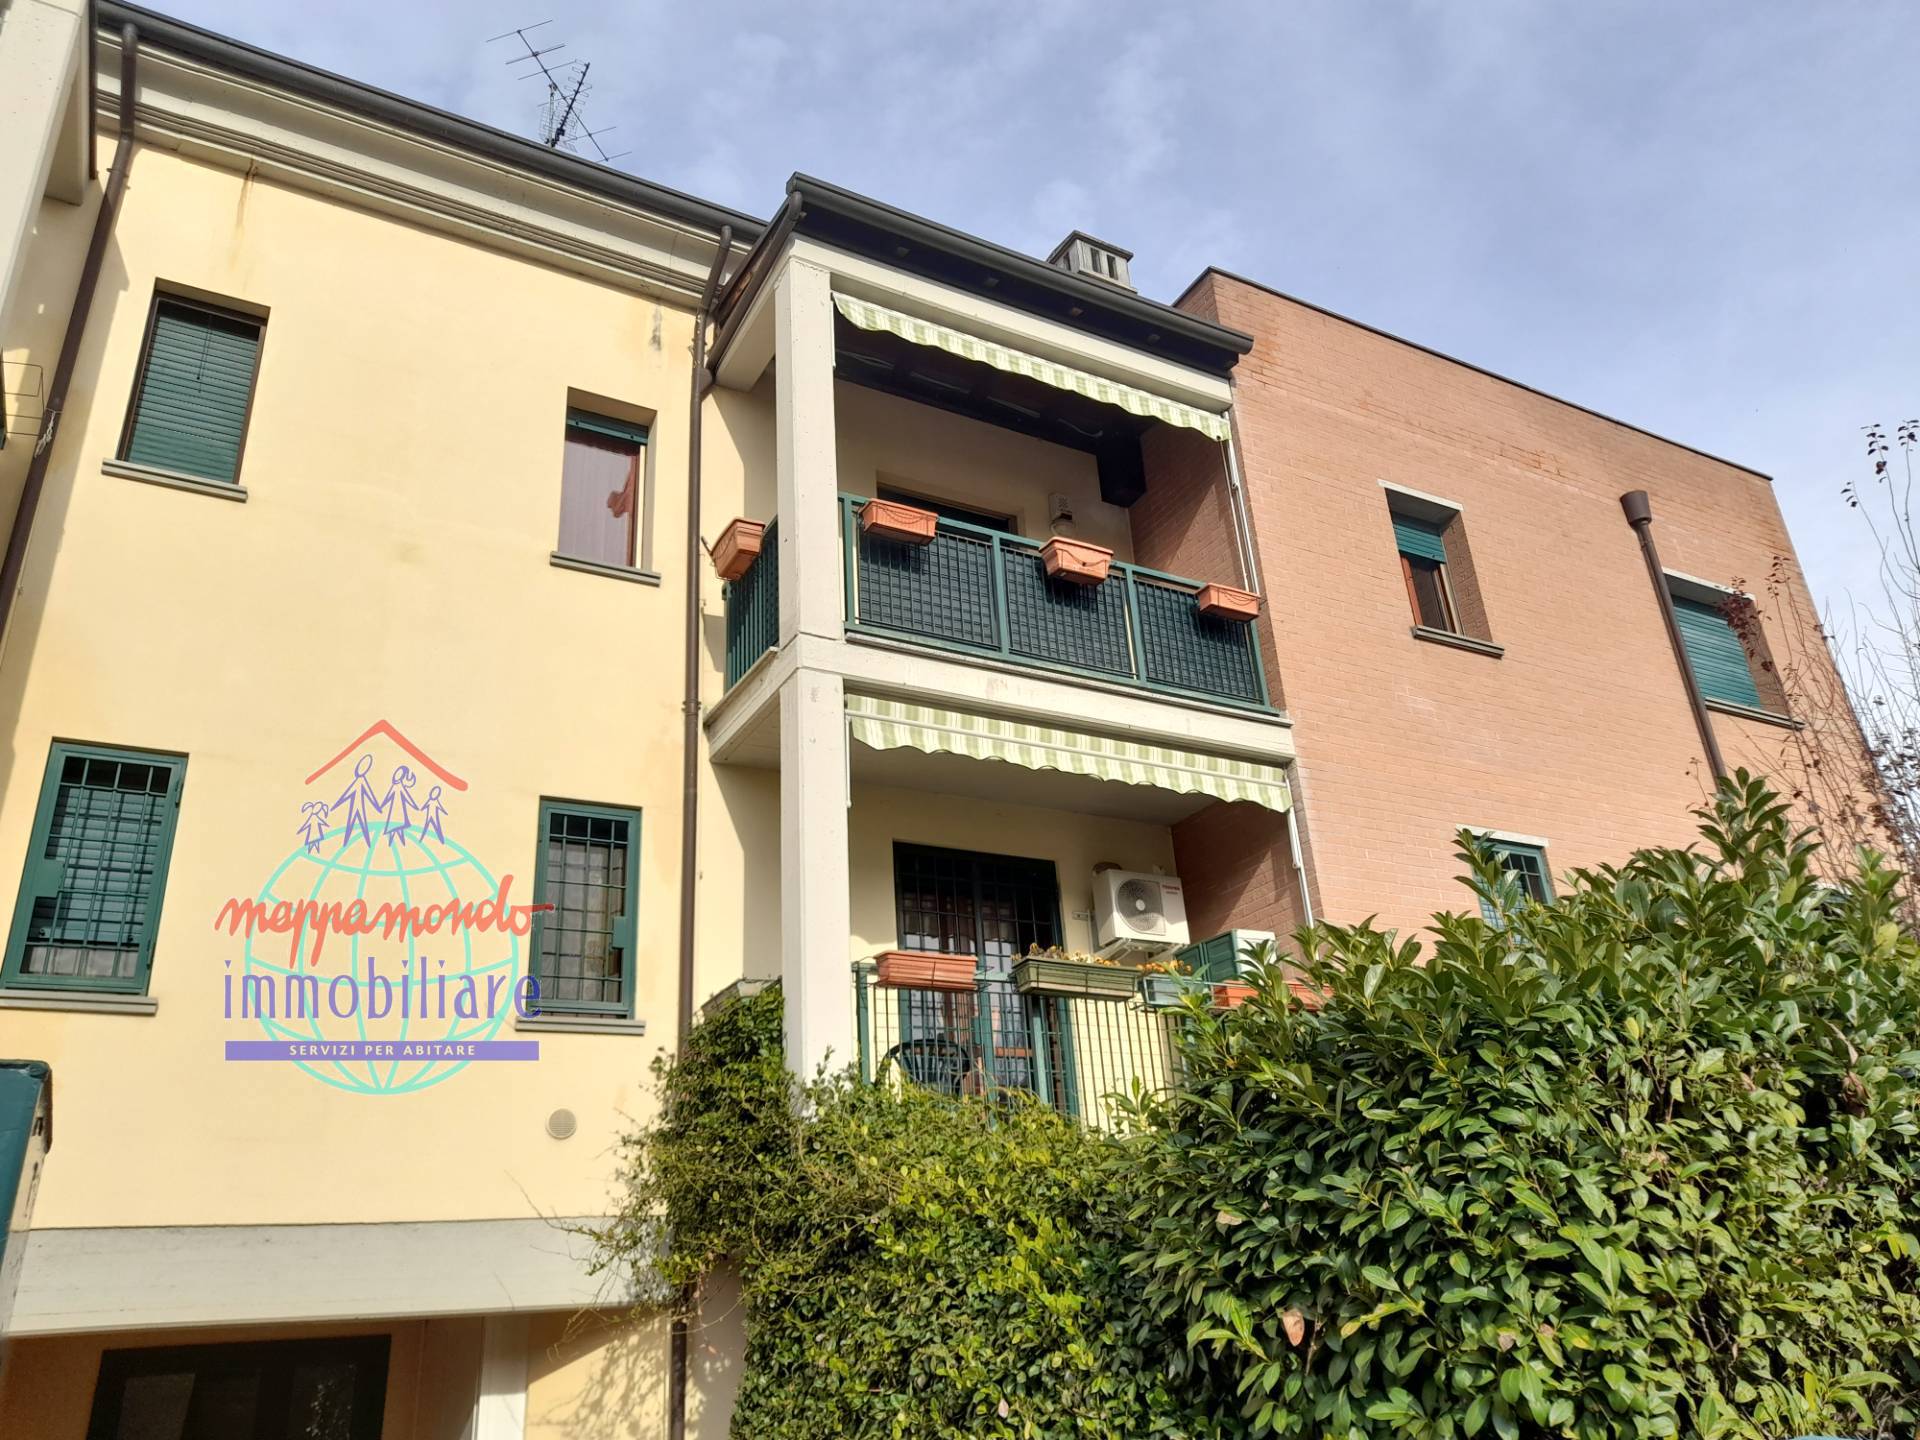 Appartamento in vendita a Sala Bolognese, 4 locali, zona Località: OsteriaNuova, prezzo € 185.000 | PortaleAgenzieImmobiliari.it